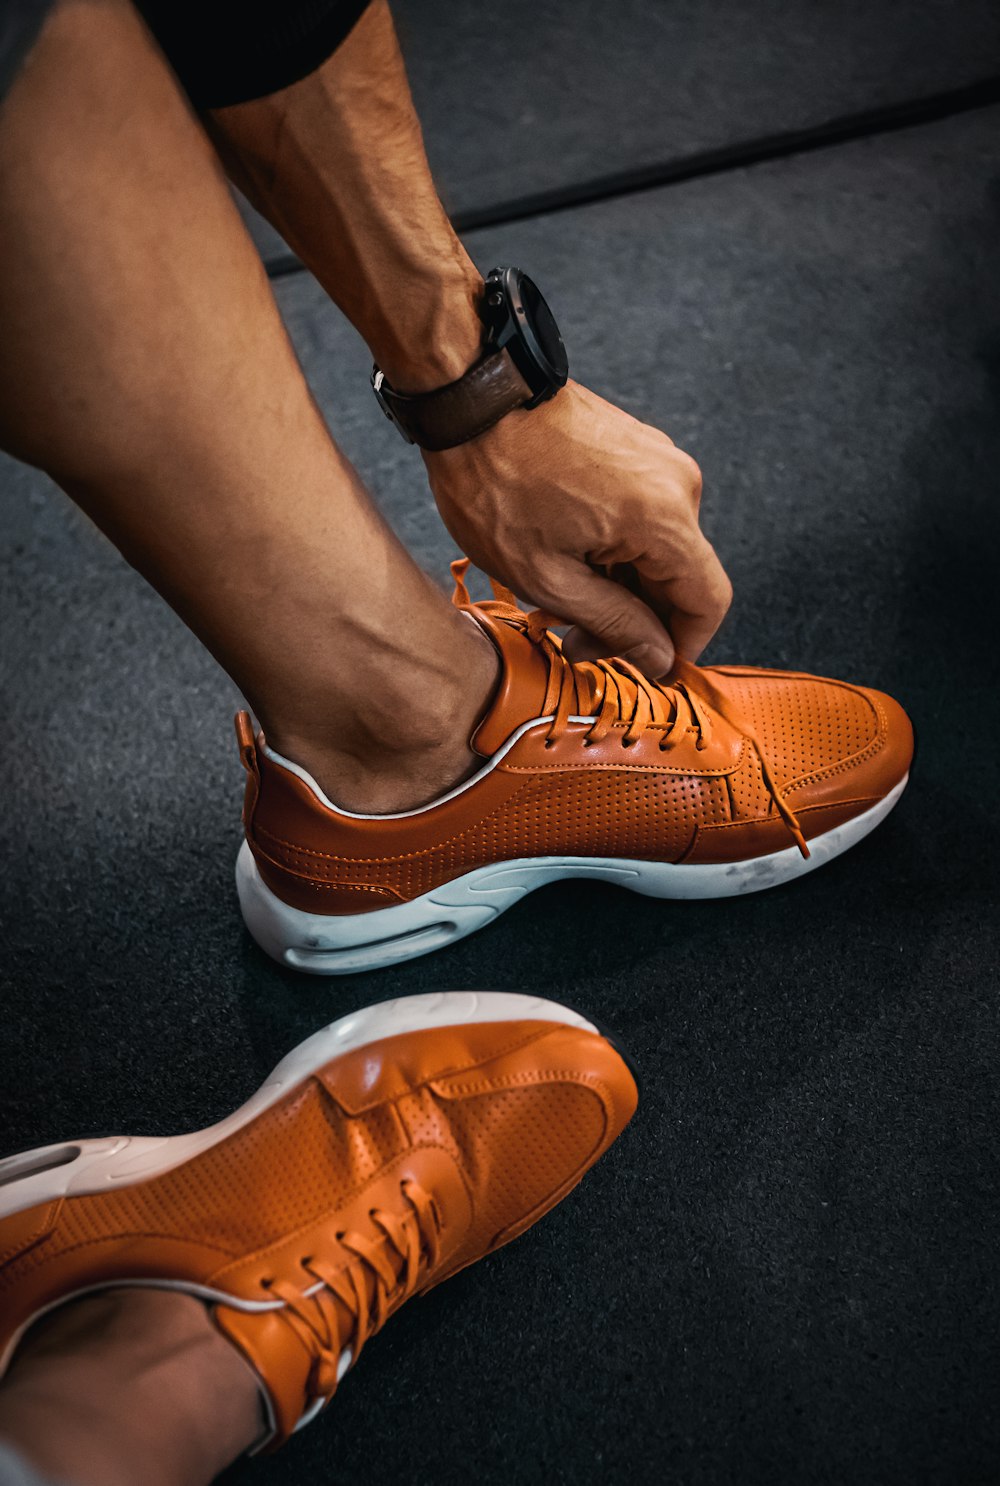 Persona che indossa scarpe da ginnastica Nike arancioni